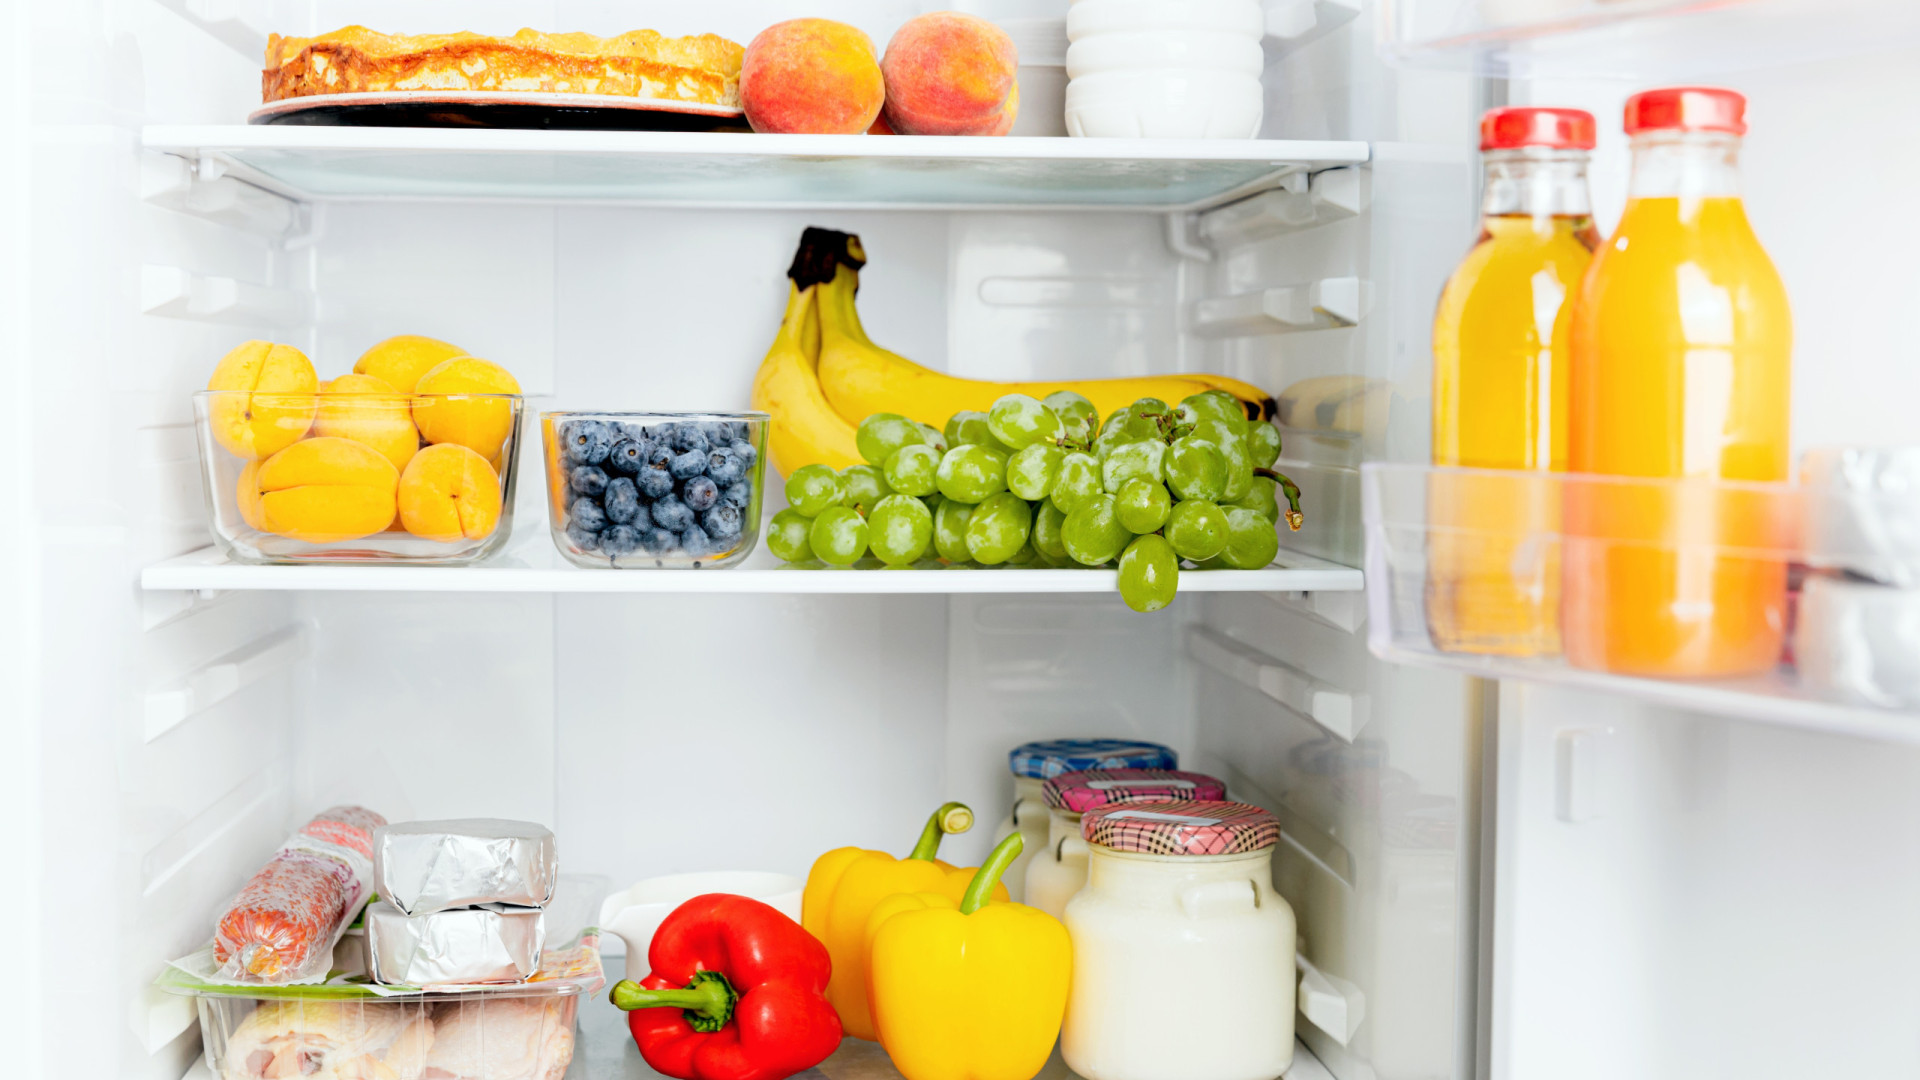 Nutricionista aconselha: Pare de guardar estes alimentos na geladeira